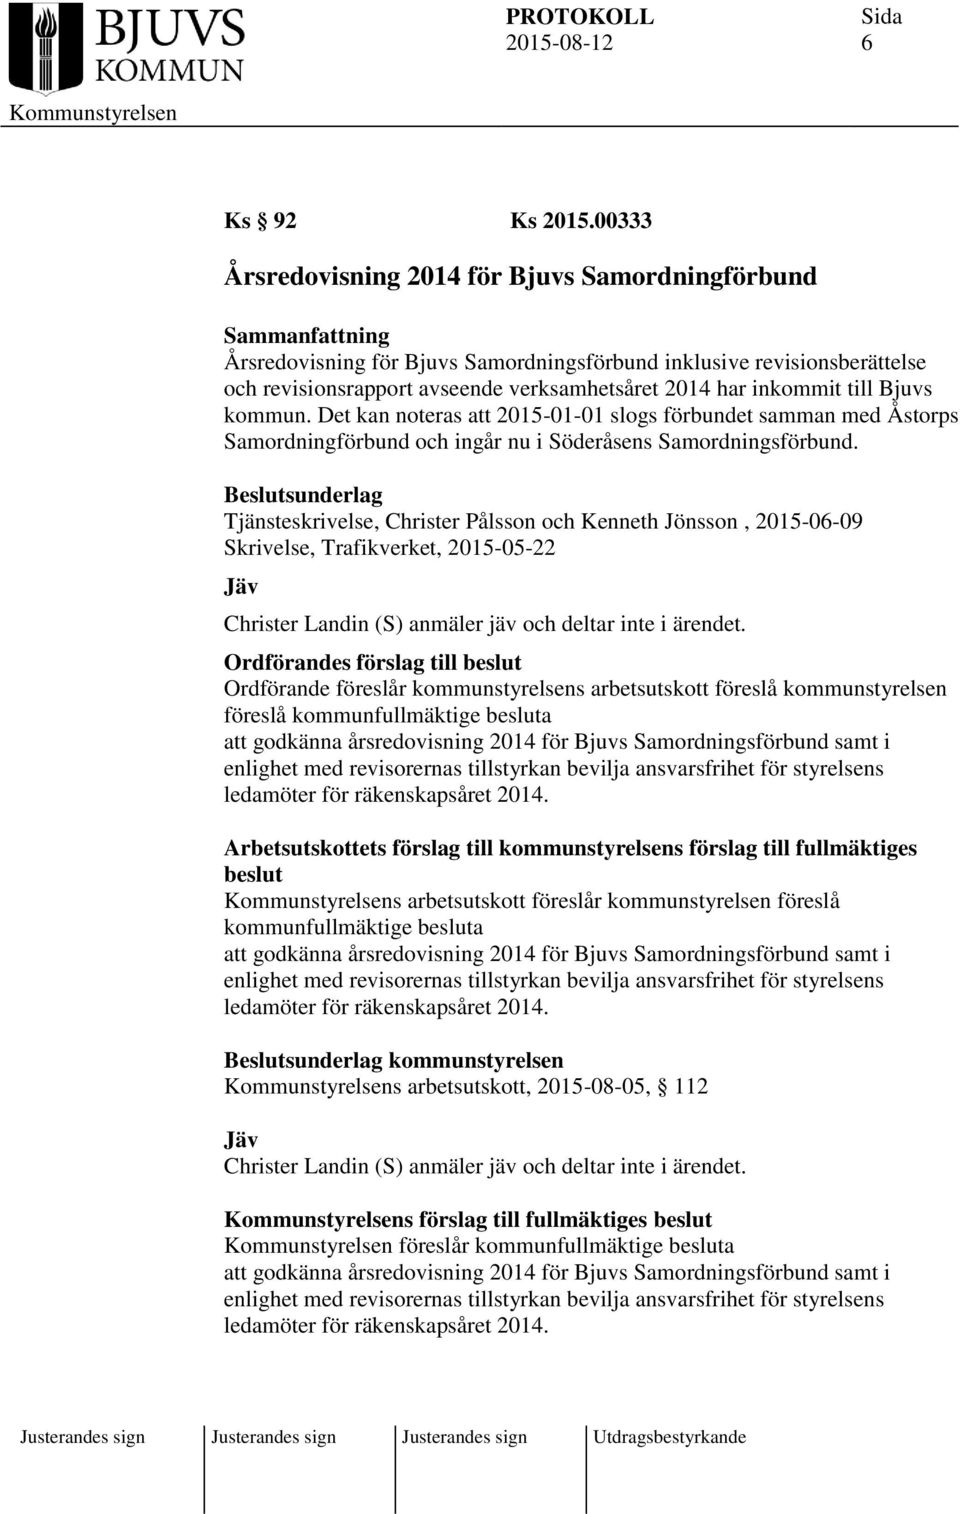 inkommit till Bjuvs kommun. Det kan noteras att 2015-01-01 slogs förbundet samman med Åstorps Samordningförbund och ingår nu i Söderåsens Samordningsförbund.